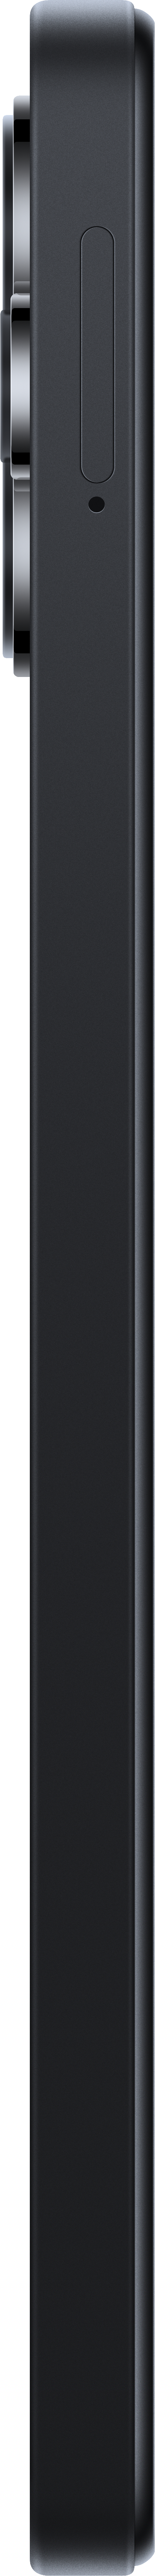 XIAOMI Redmi 12 Dual Midnight Black 128 GB SIM